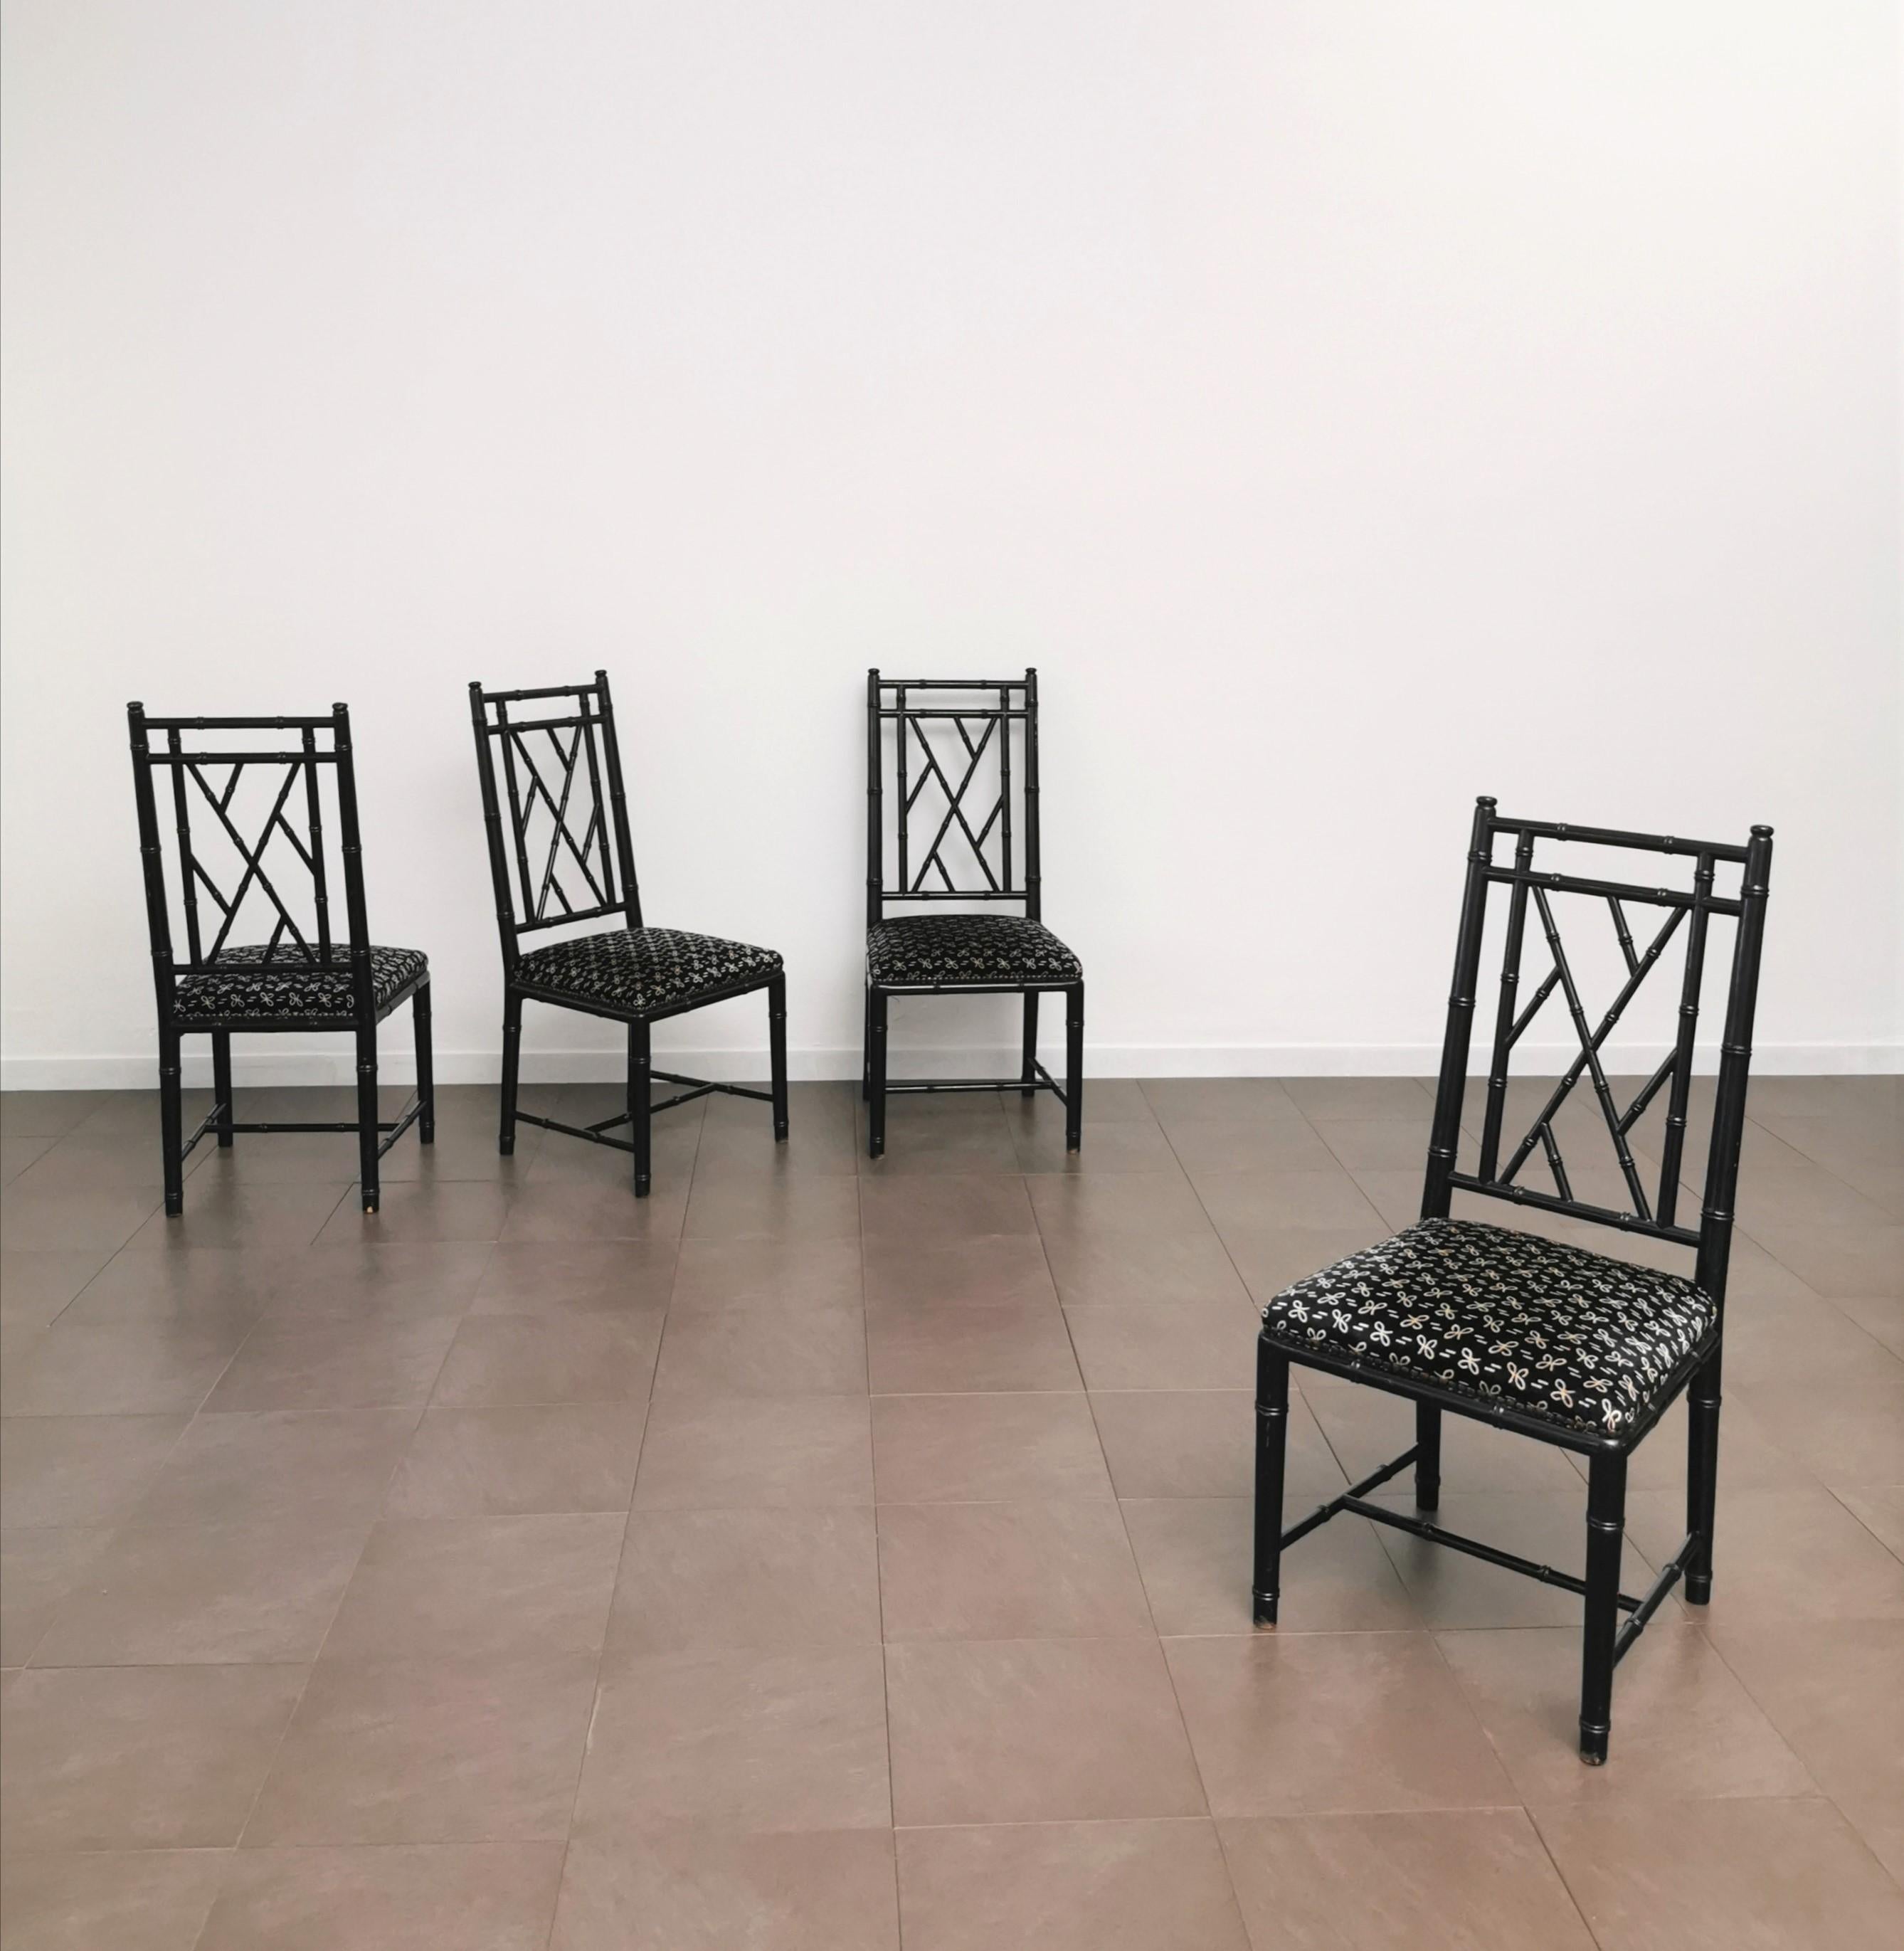 Elegant et fin ensemble de 4 chaises produites en Italie dans les années 1980. Chaque chaise individuelle a été fabriquée en bois émaillé noir travaillé avec un effet bambou avec une assise d'excellente qualité en velours noir lisse avec des